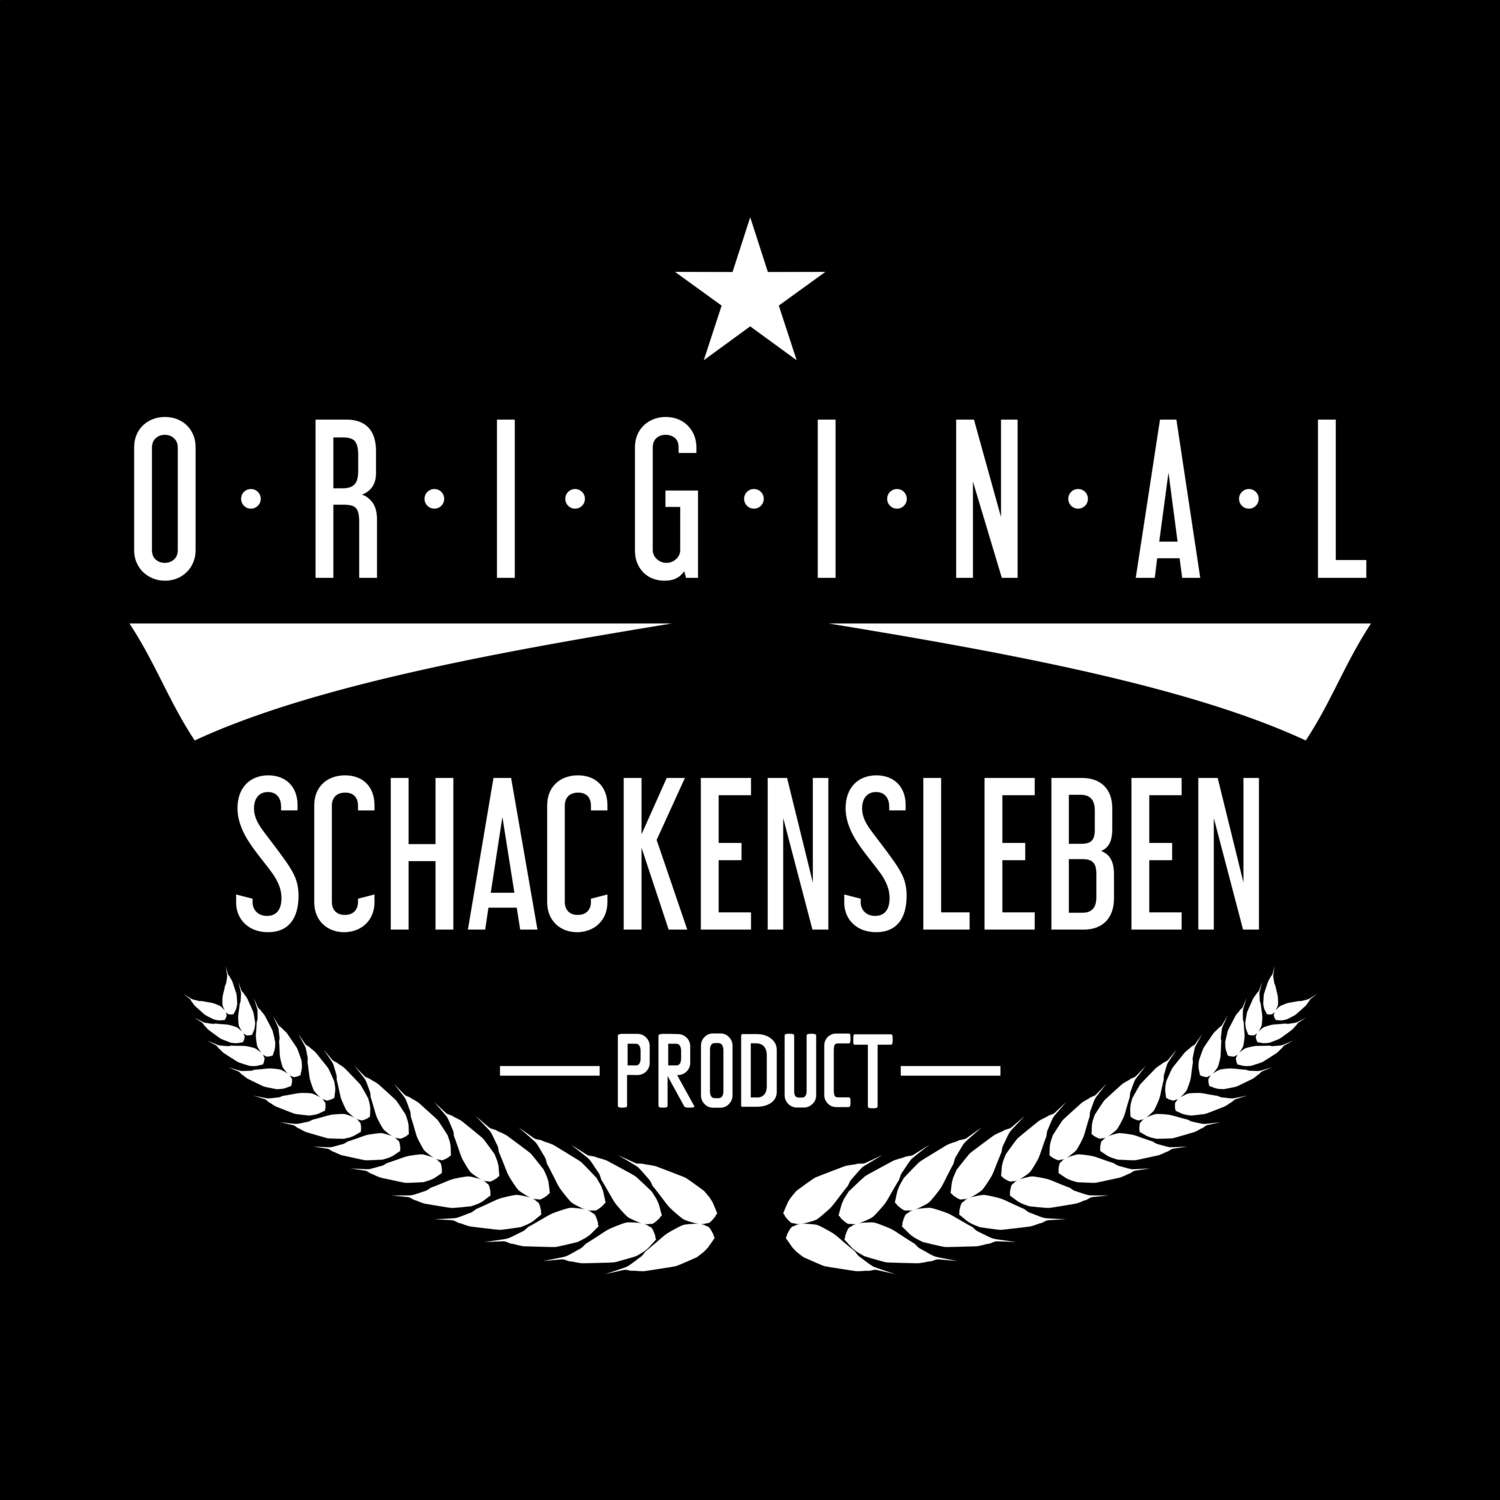 Schackensleben T-Shirt »Original Product«